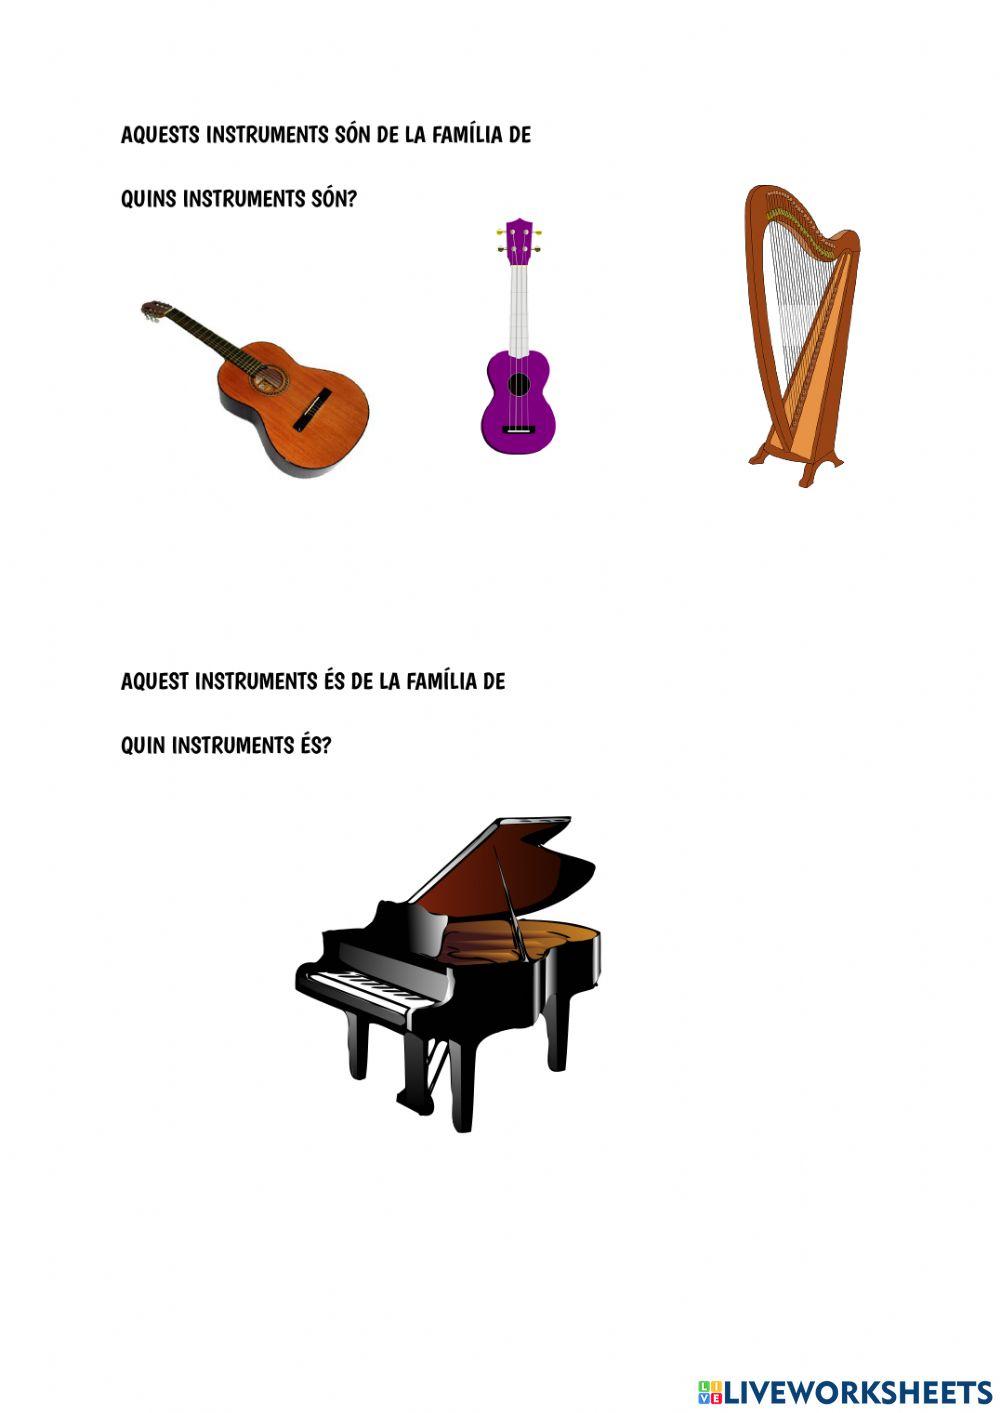 Instruments de Corda